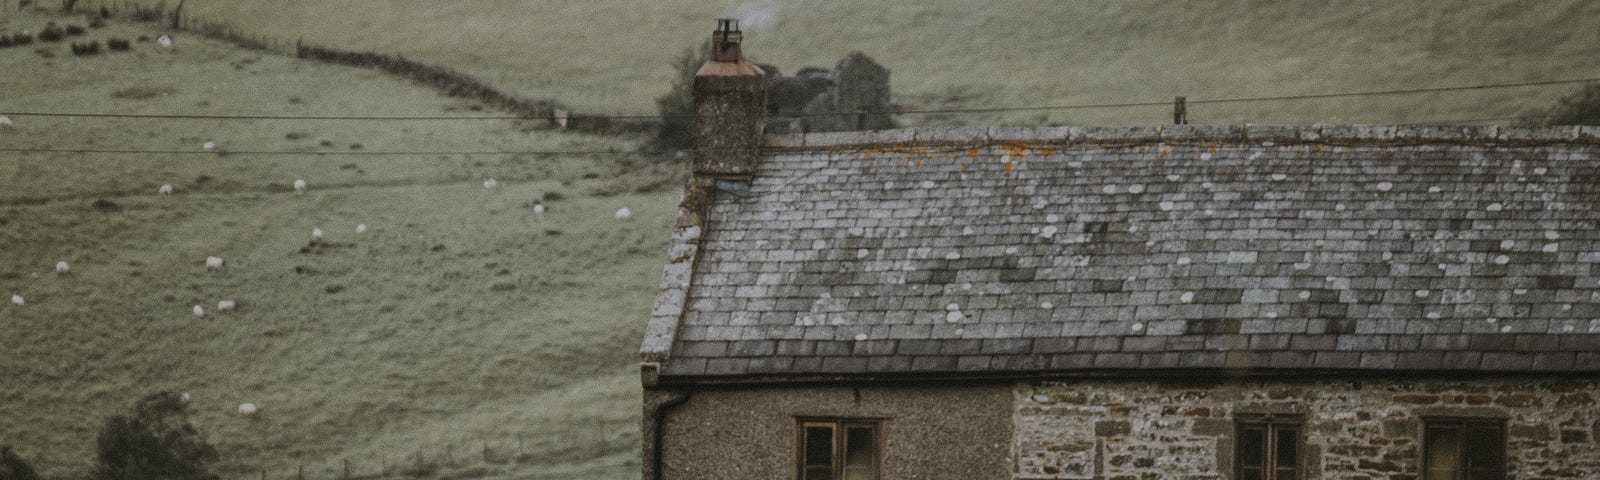 An old farmhouse